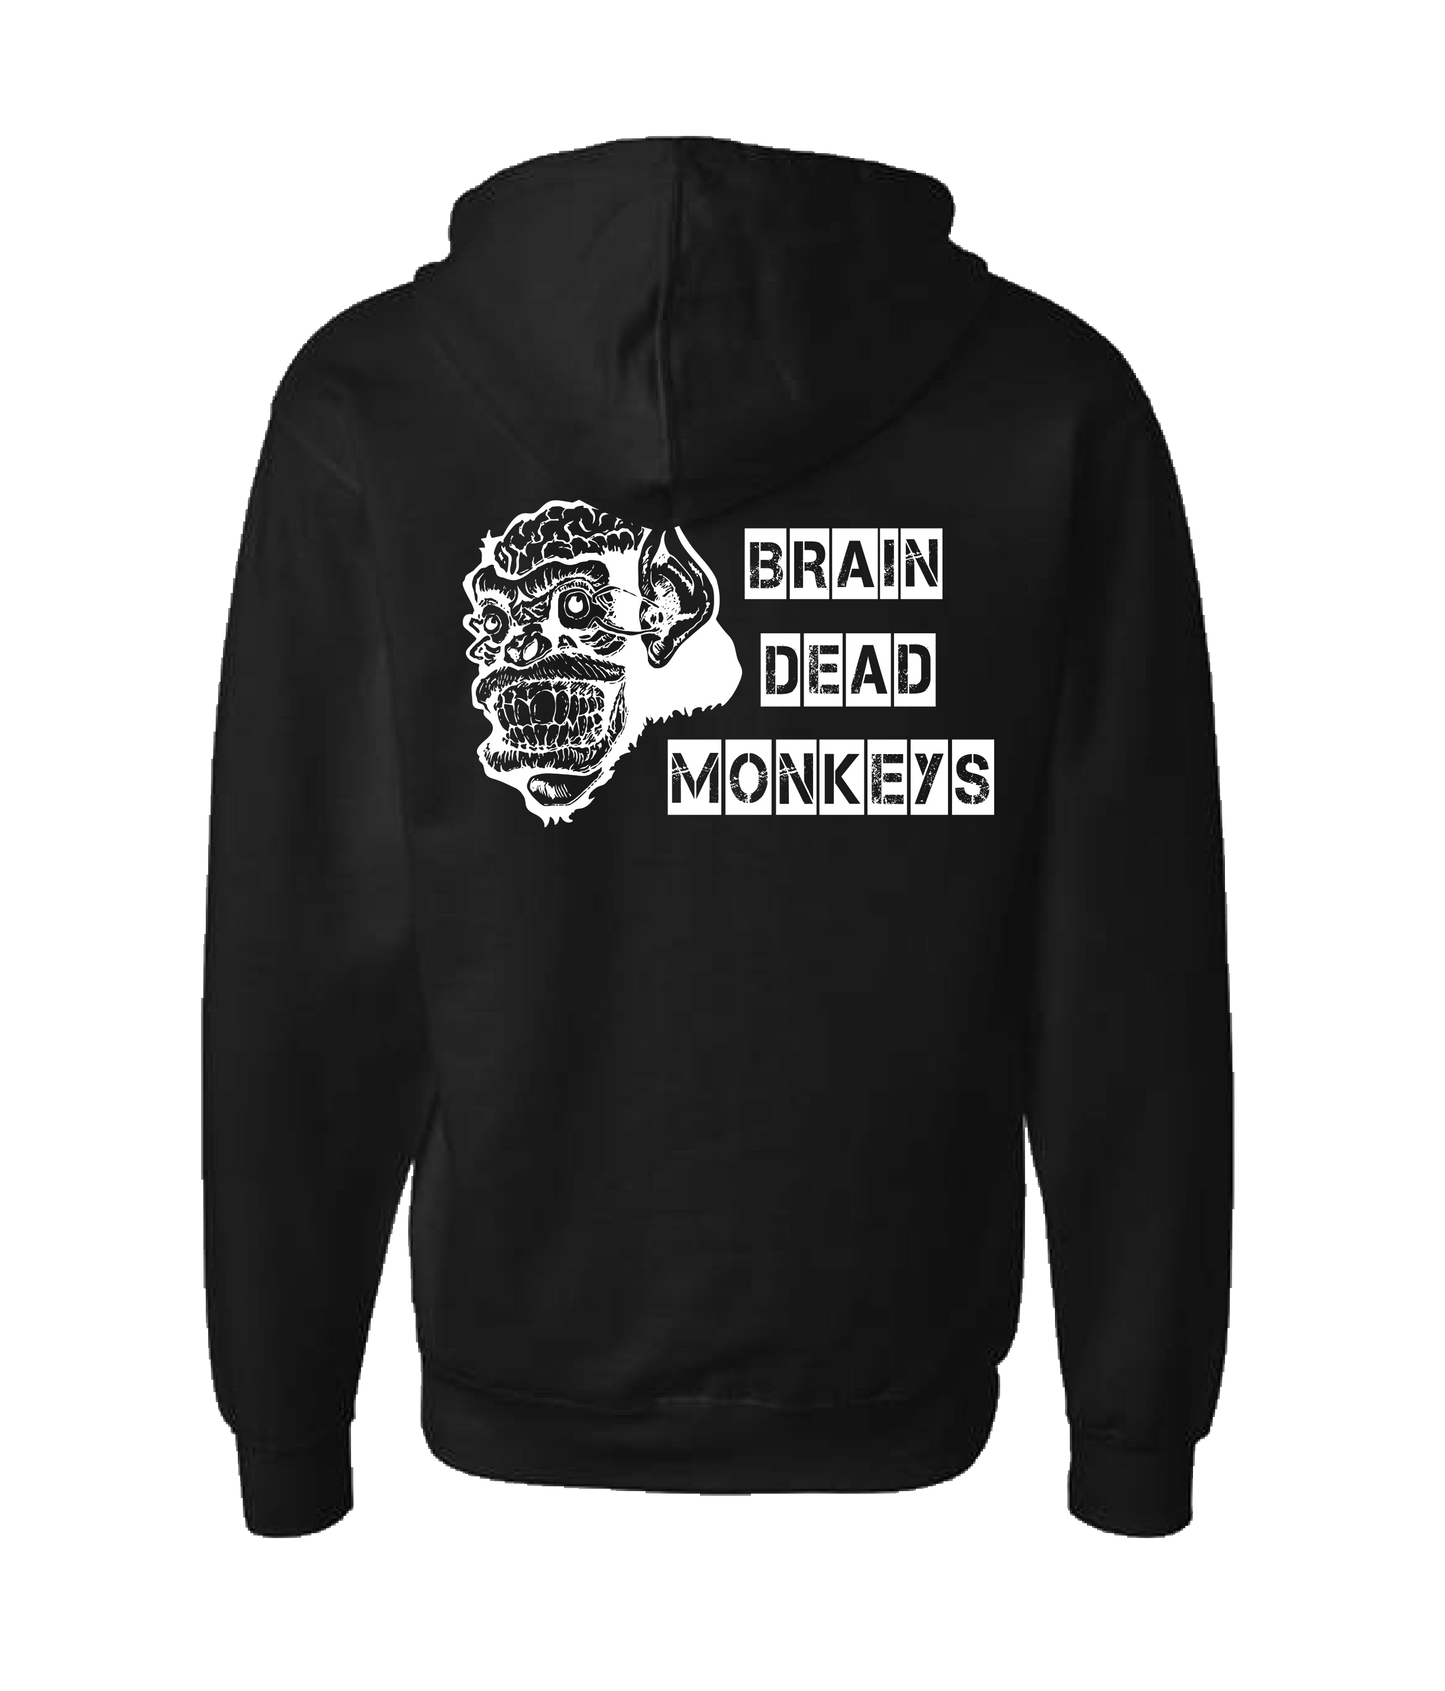 Brain Dead Monkeys - Monkey - Black Zip Up Hoodie